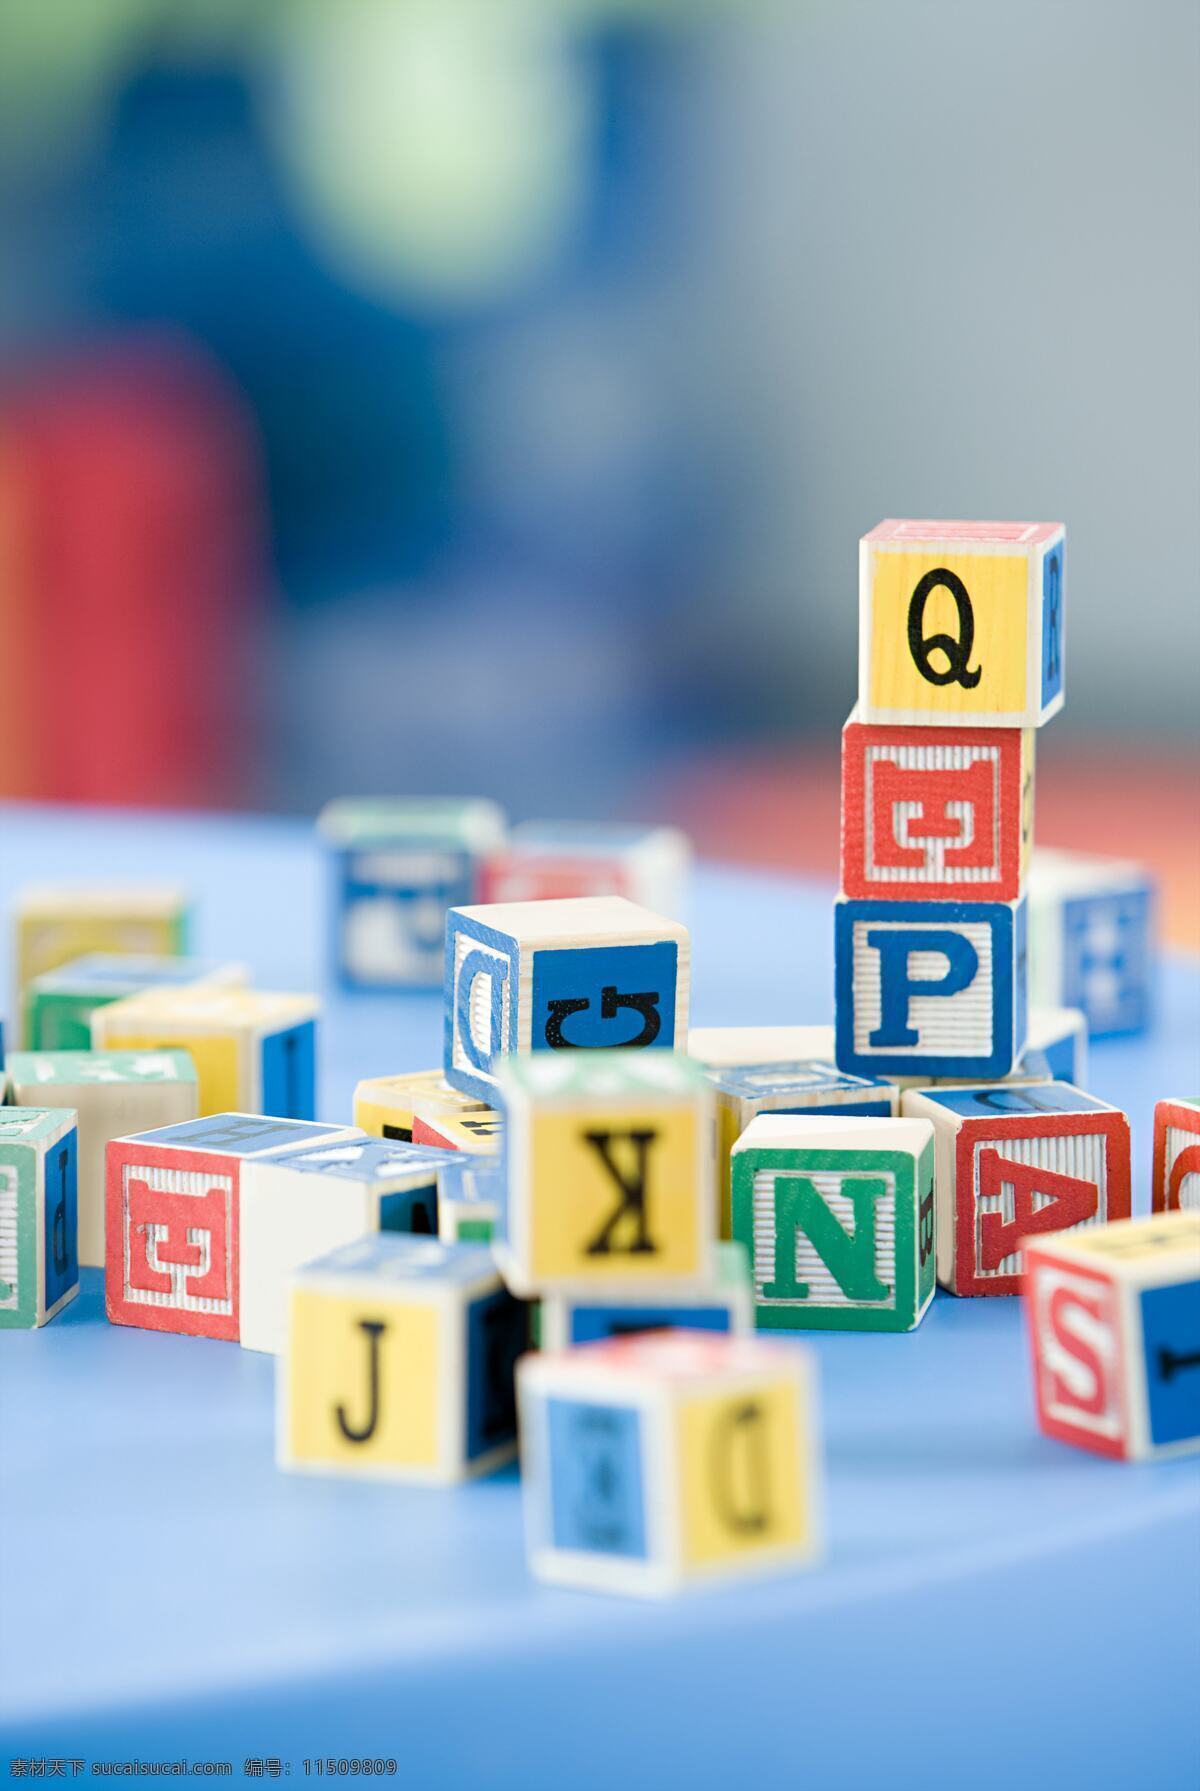 字母 拼图 方块 立体 拼贴 色块 生活百科 生活素材 字母拼图 拼图块 玩具 五彩色块 矢量图 艺术字